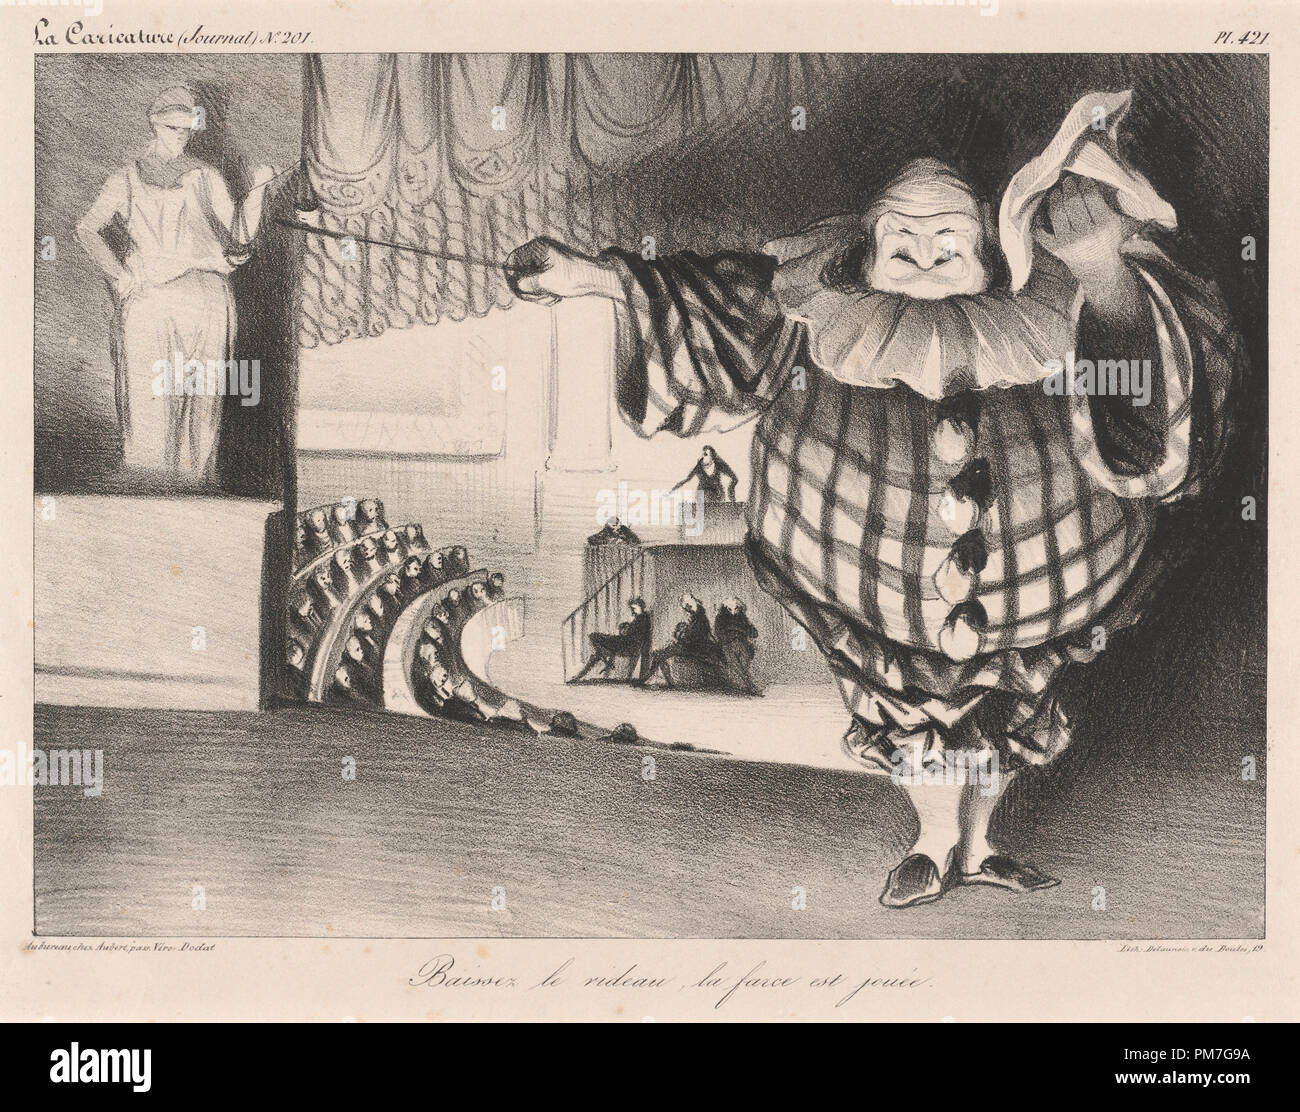 Baissez le Rideau, la Farce est jouée. Stand: 1834. Abmessungen: Bild: 19,9 x 27,7 cm (7 13/16 x 10 7/8 in.) Blatt: 27,5 x 36,1 cm (10 13/16 x 14 3/16 in.). Medium: Lithographie. Museum: Nationalgalerie, Washington DC. Thema: Honoré Daumier. Stockfoto